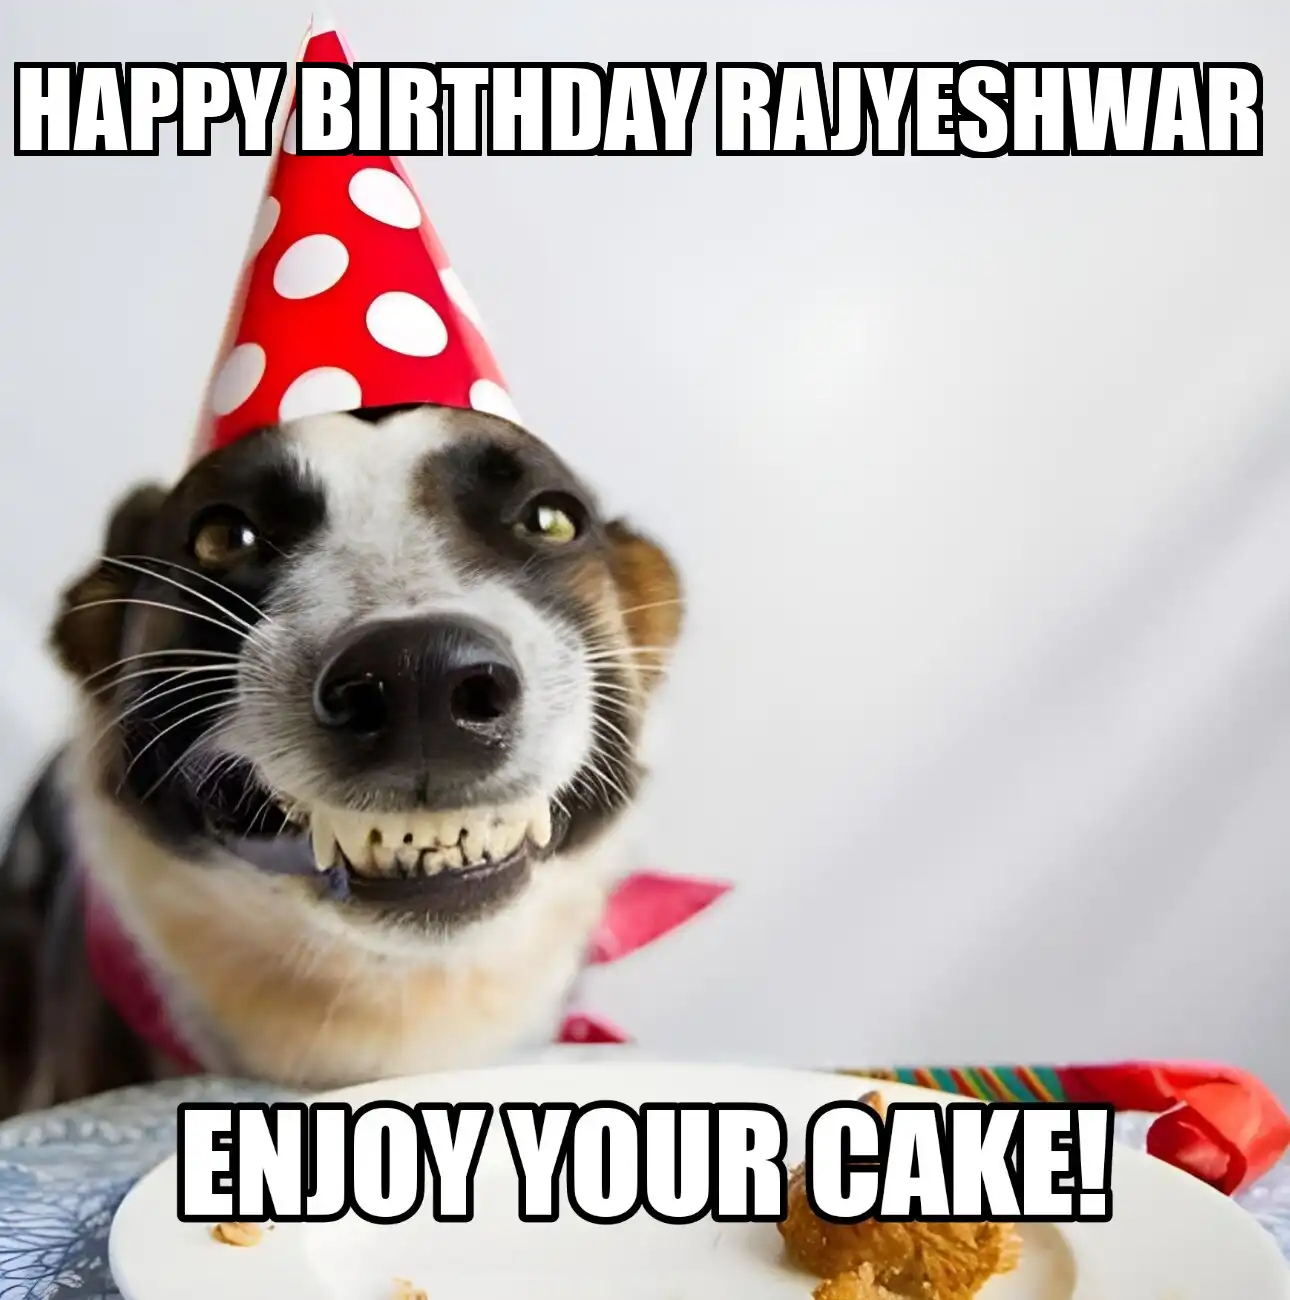 Happy Birthday Rajyeshwar Enjoy Your Cake Dog Meme